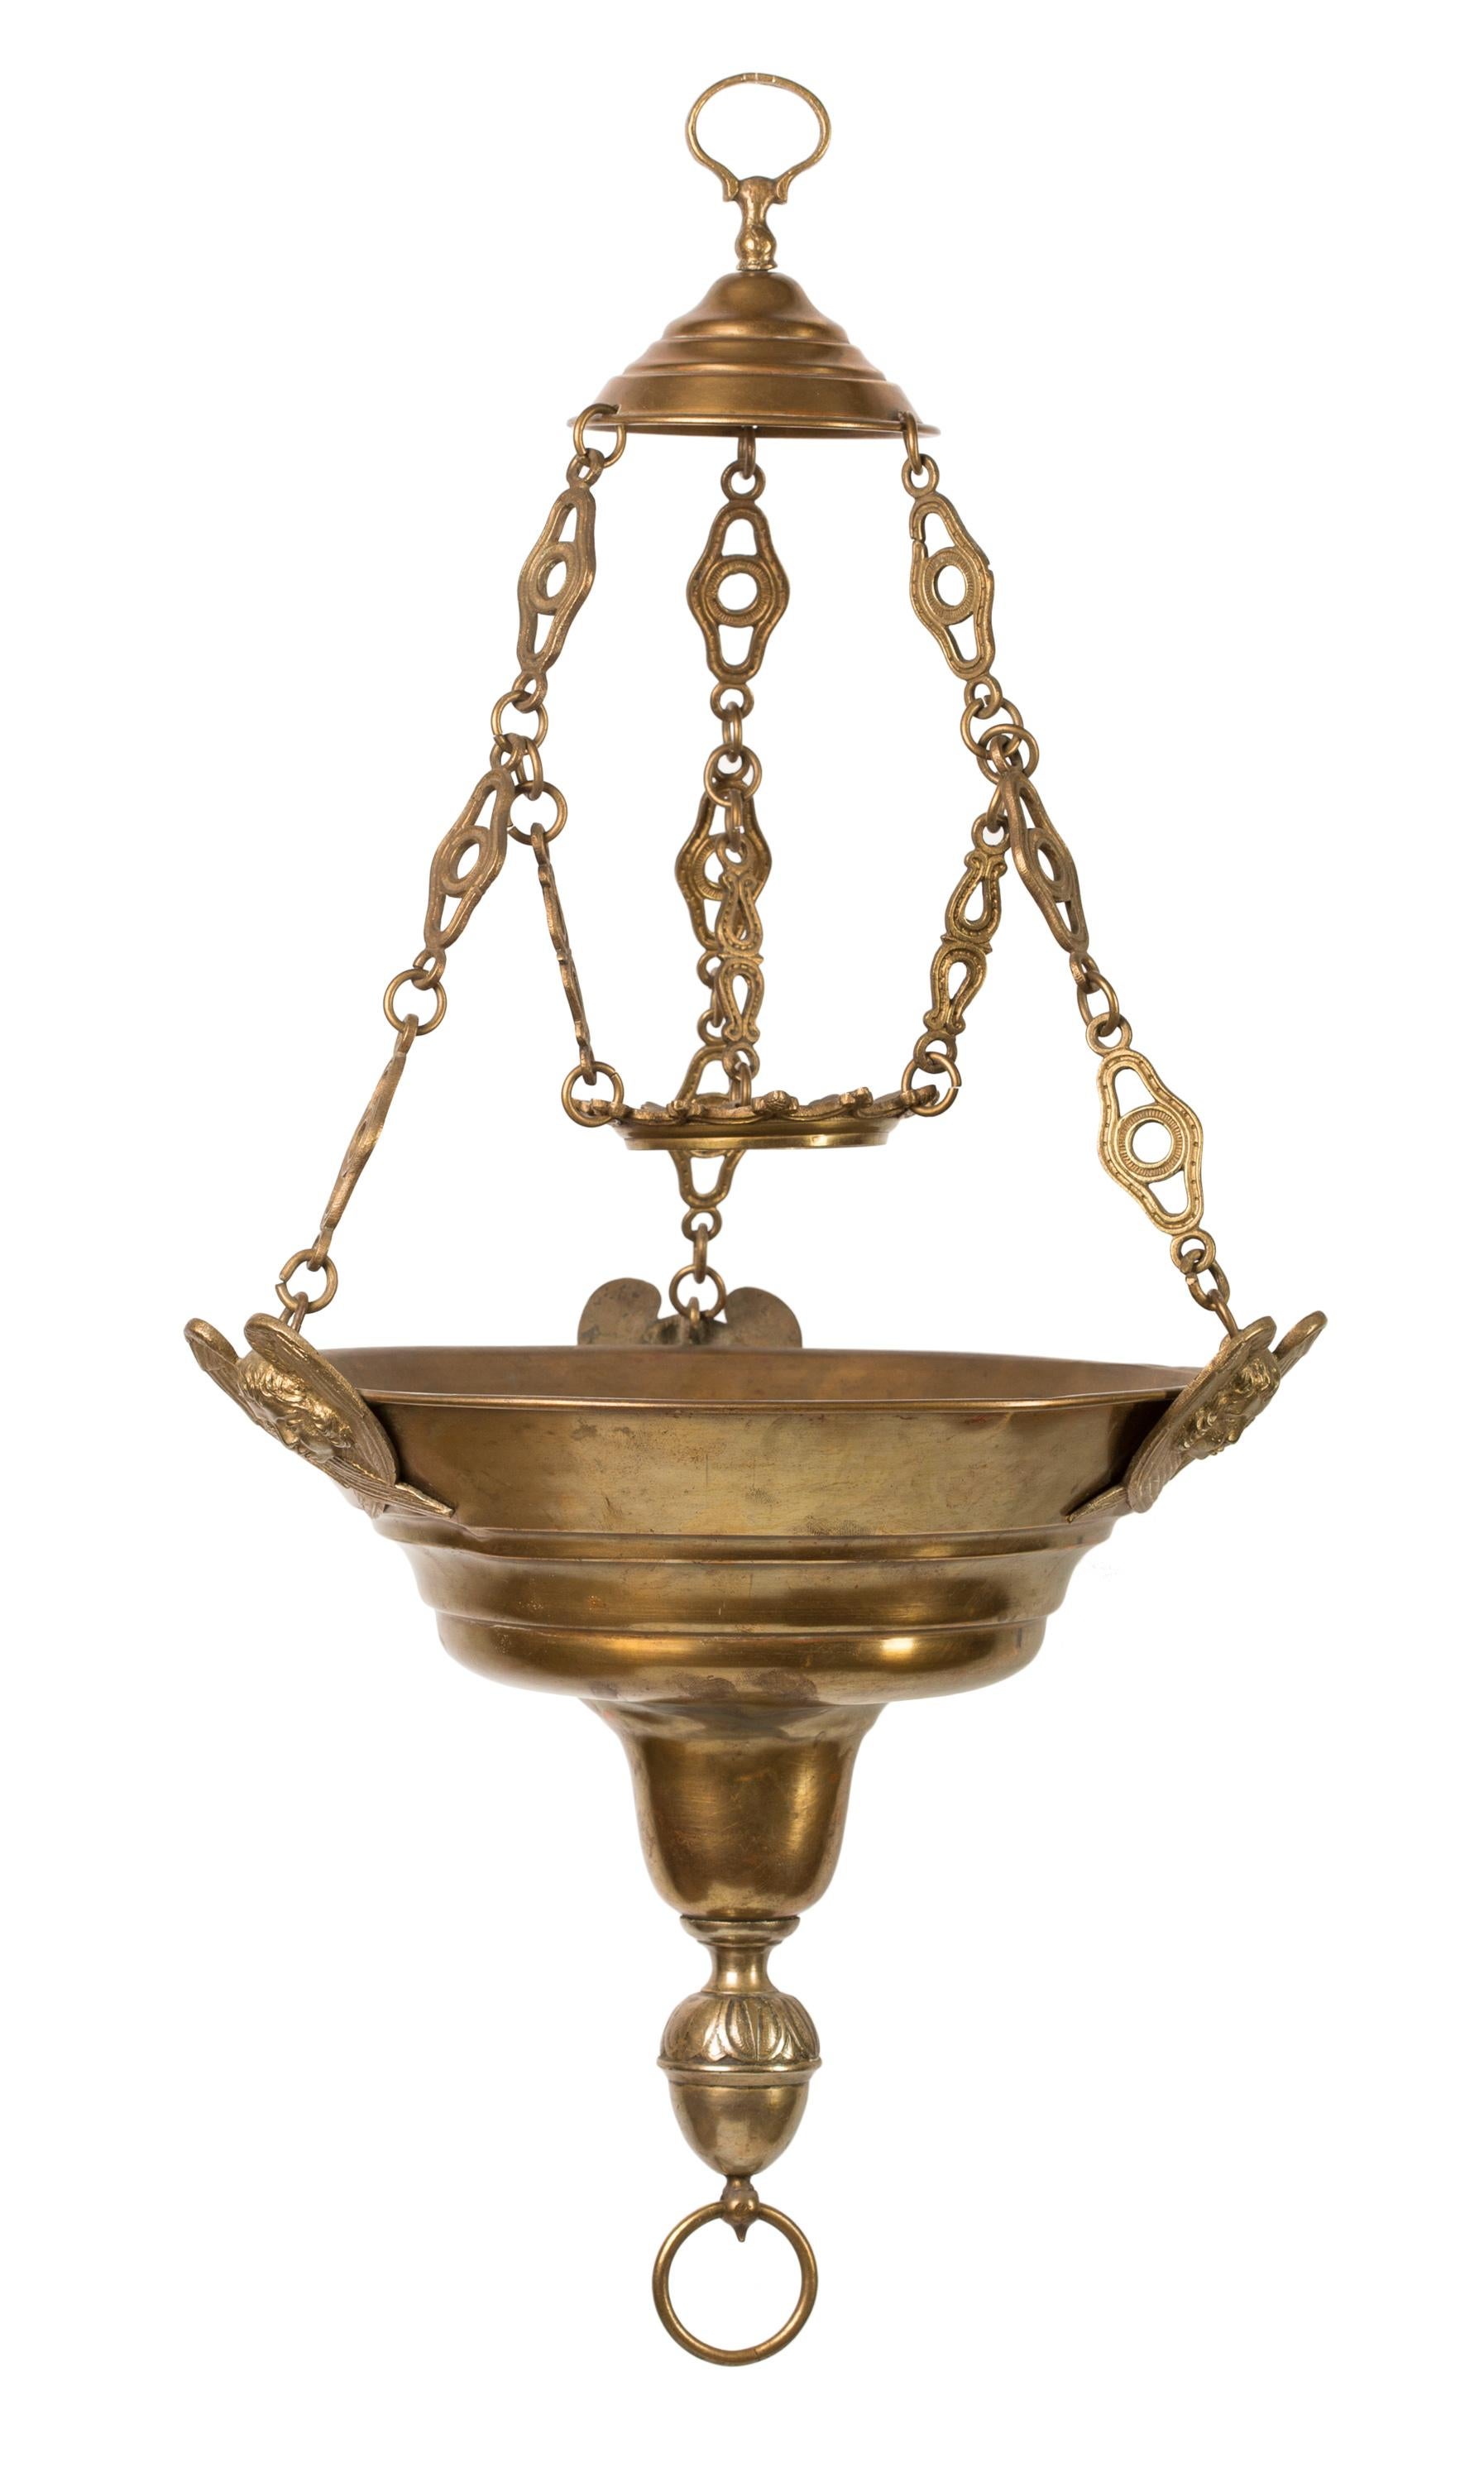 Diese hängende Sanktuariumlampe aus Messing aus dem 19. Jahrhundert stammt aus einer spanischen Sammlung, weist jedoch Ähnlichkeiten mit französischen Sanktuariumlampen aus derselben Zeit auf. Die Gesamtform erinnert an die hängenden Öllampen der